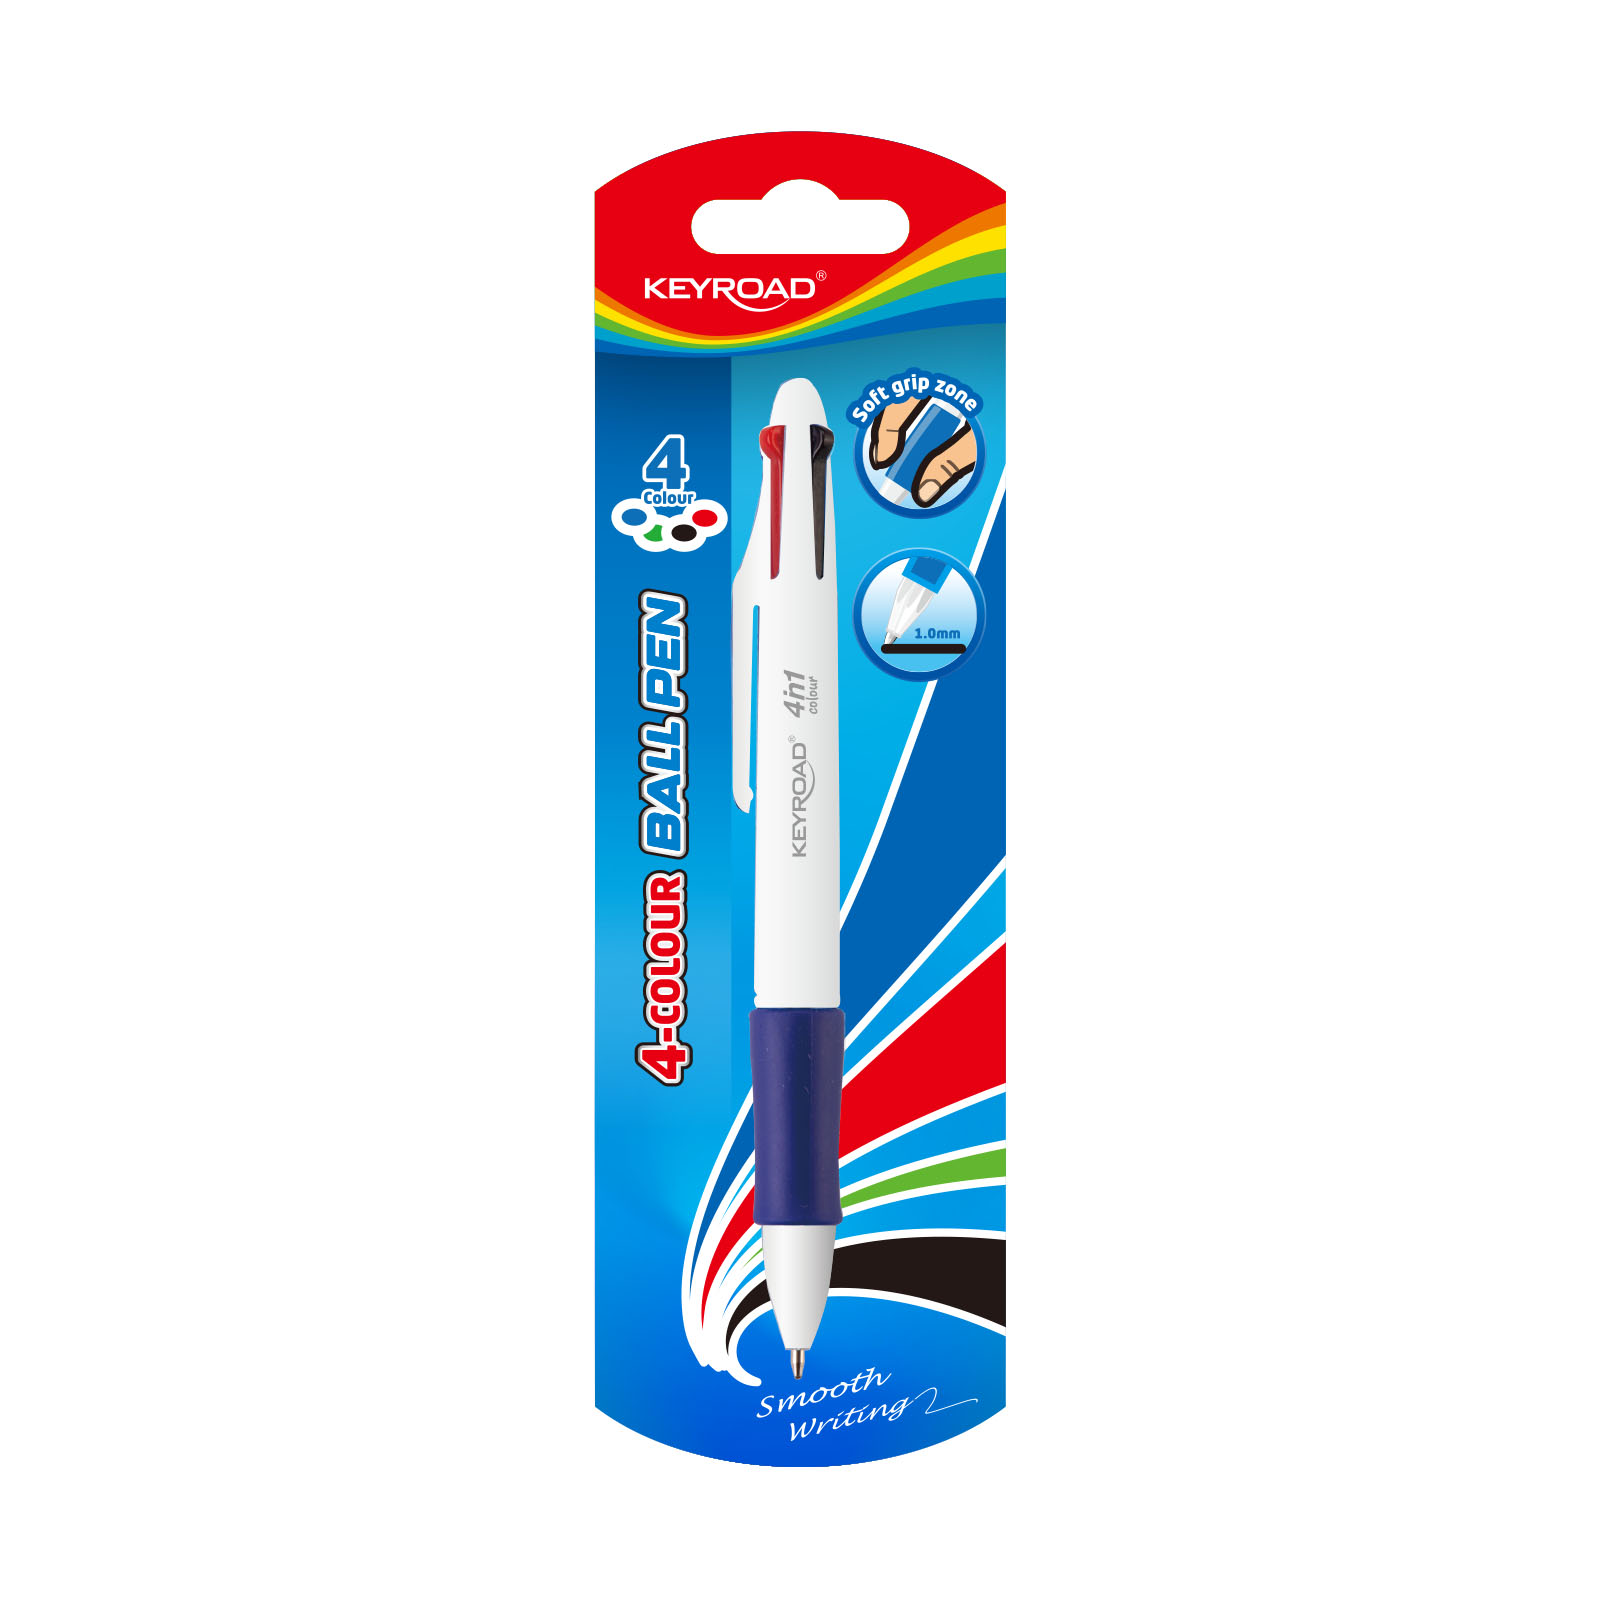 Bolígrafos de gel de alta calidad, bolígrafos de gel, tinta azul, punta  fina de 0.020 in, paquete de 10 unidades, escritura rápida y suave, para la